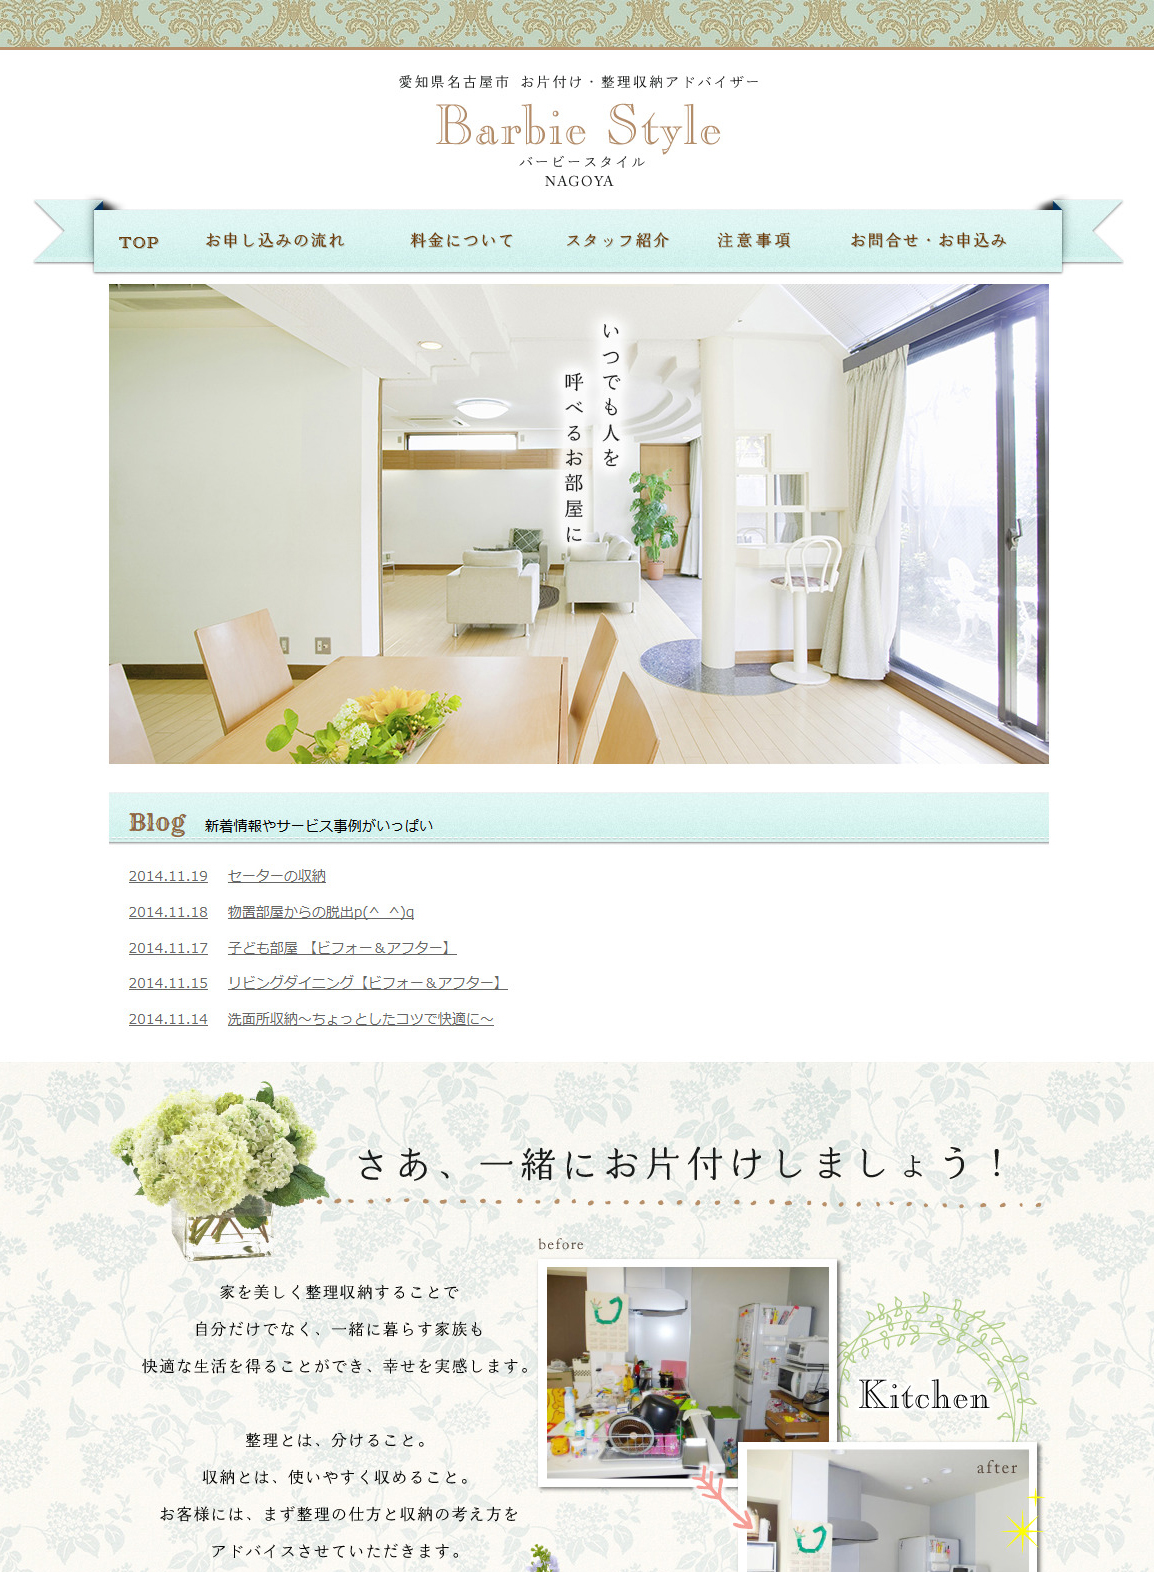 名古屋の整理収納アドバイザーのホームページ